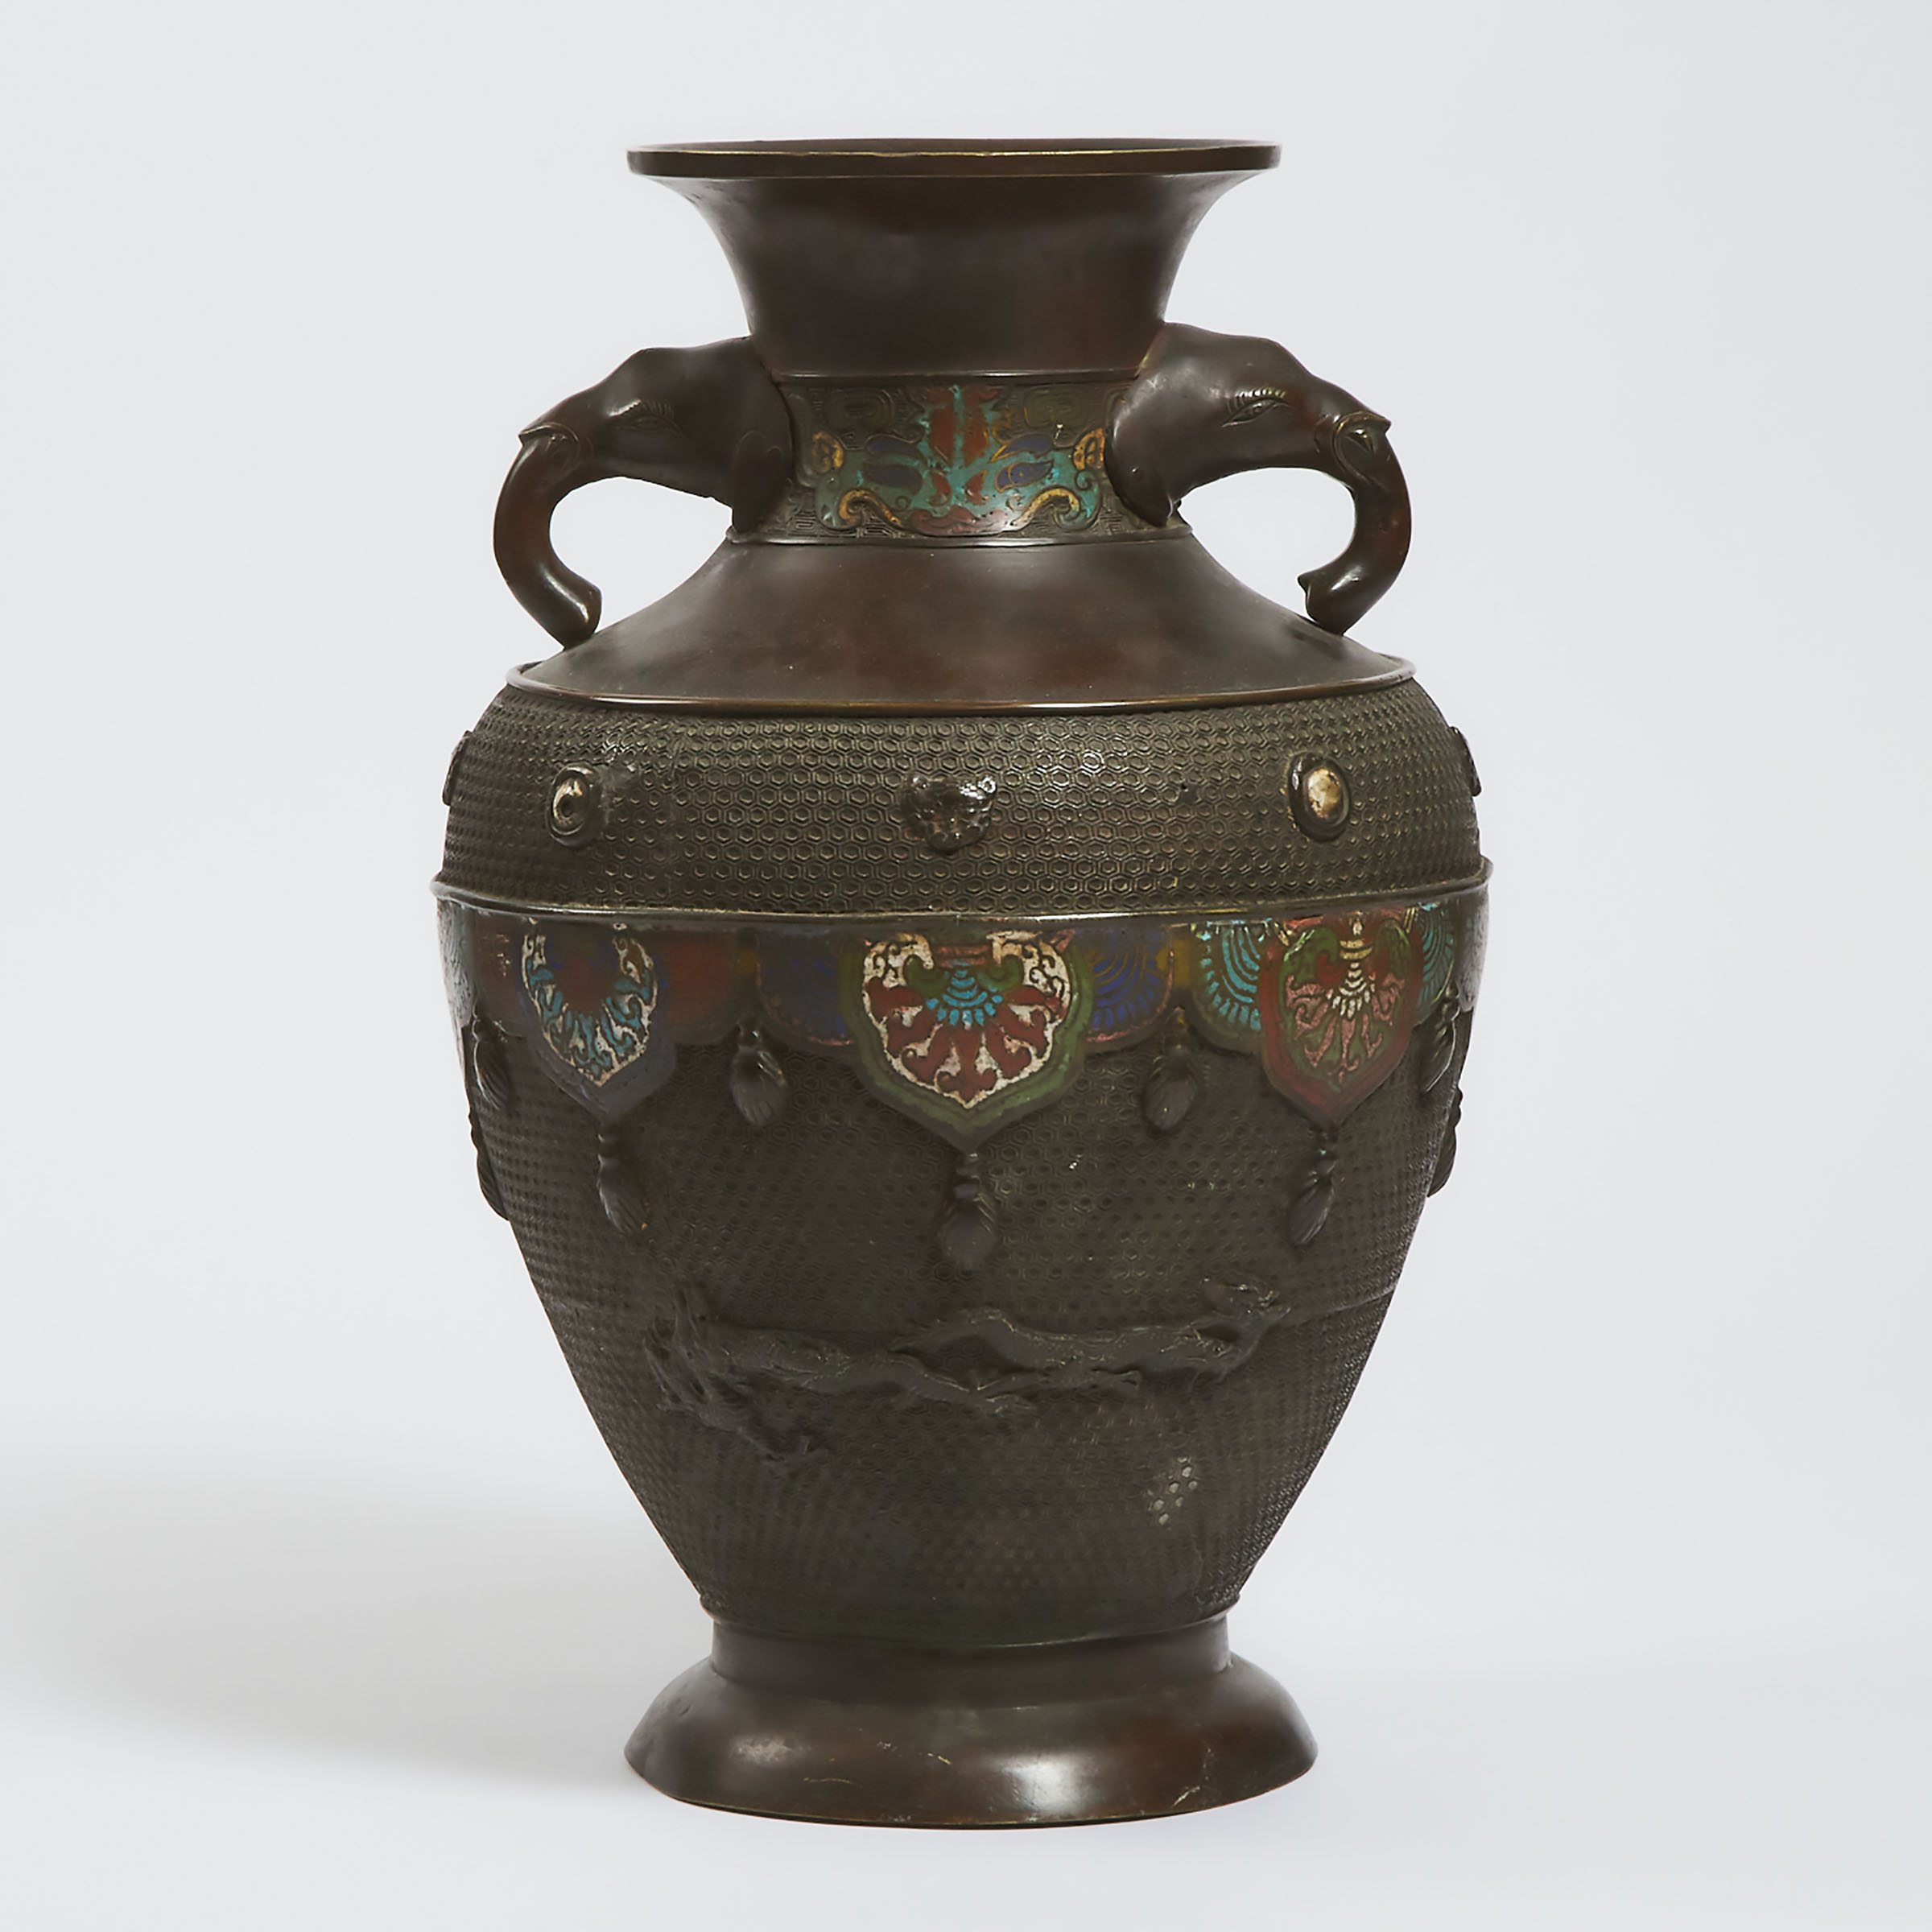 A Bronze Elephant-Handled Vase